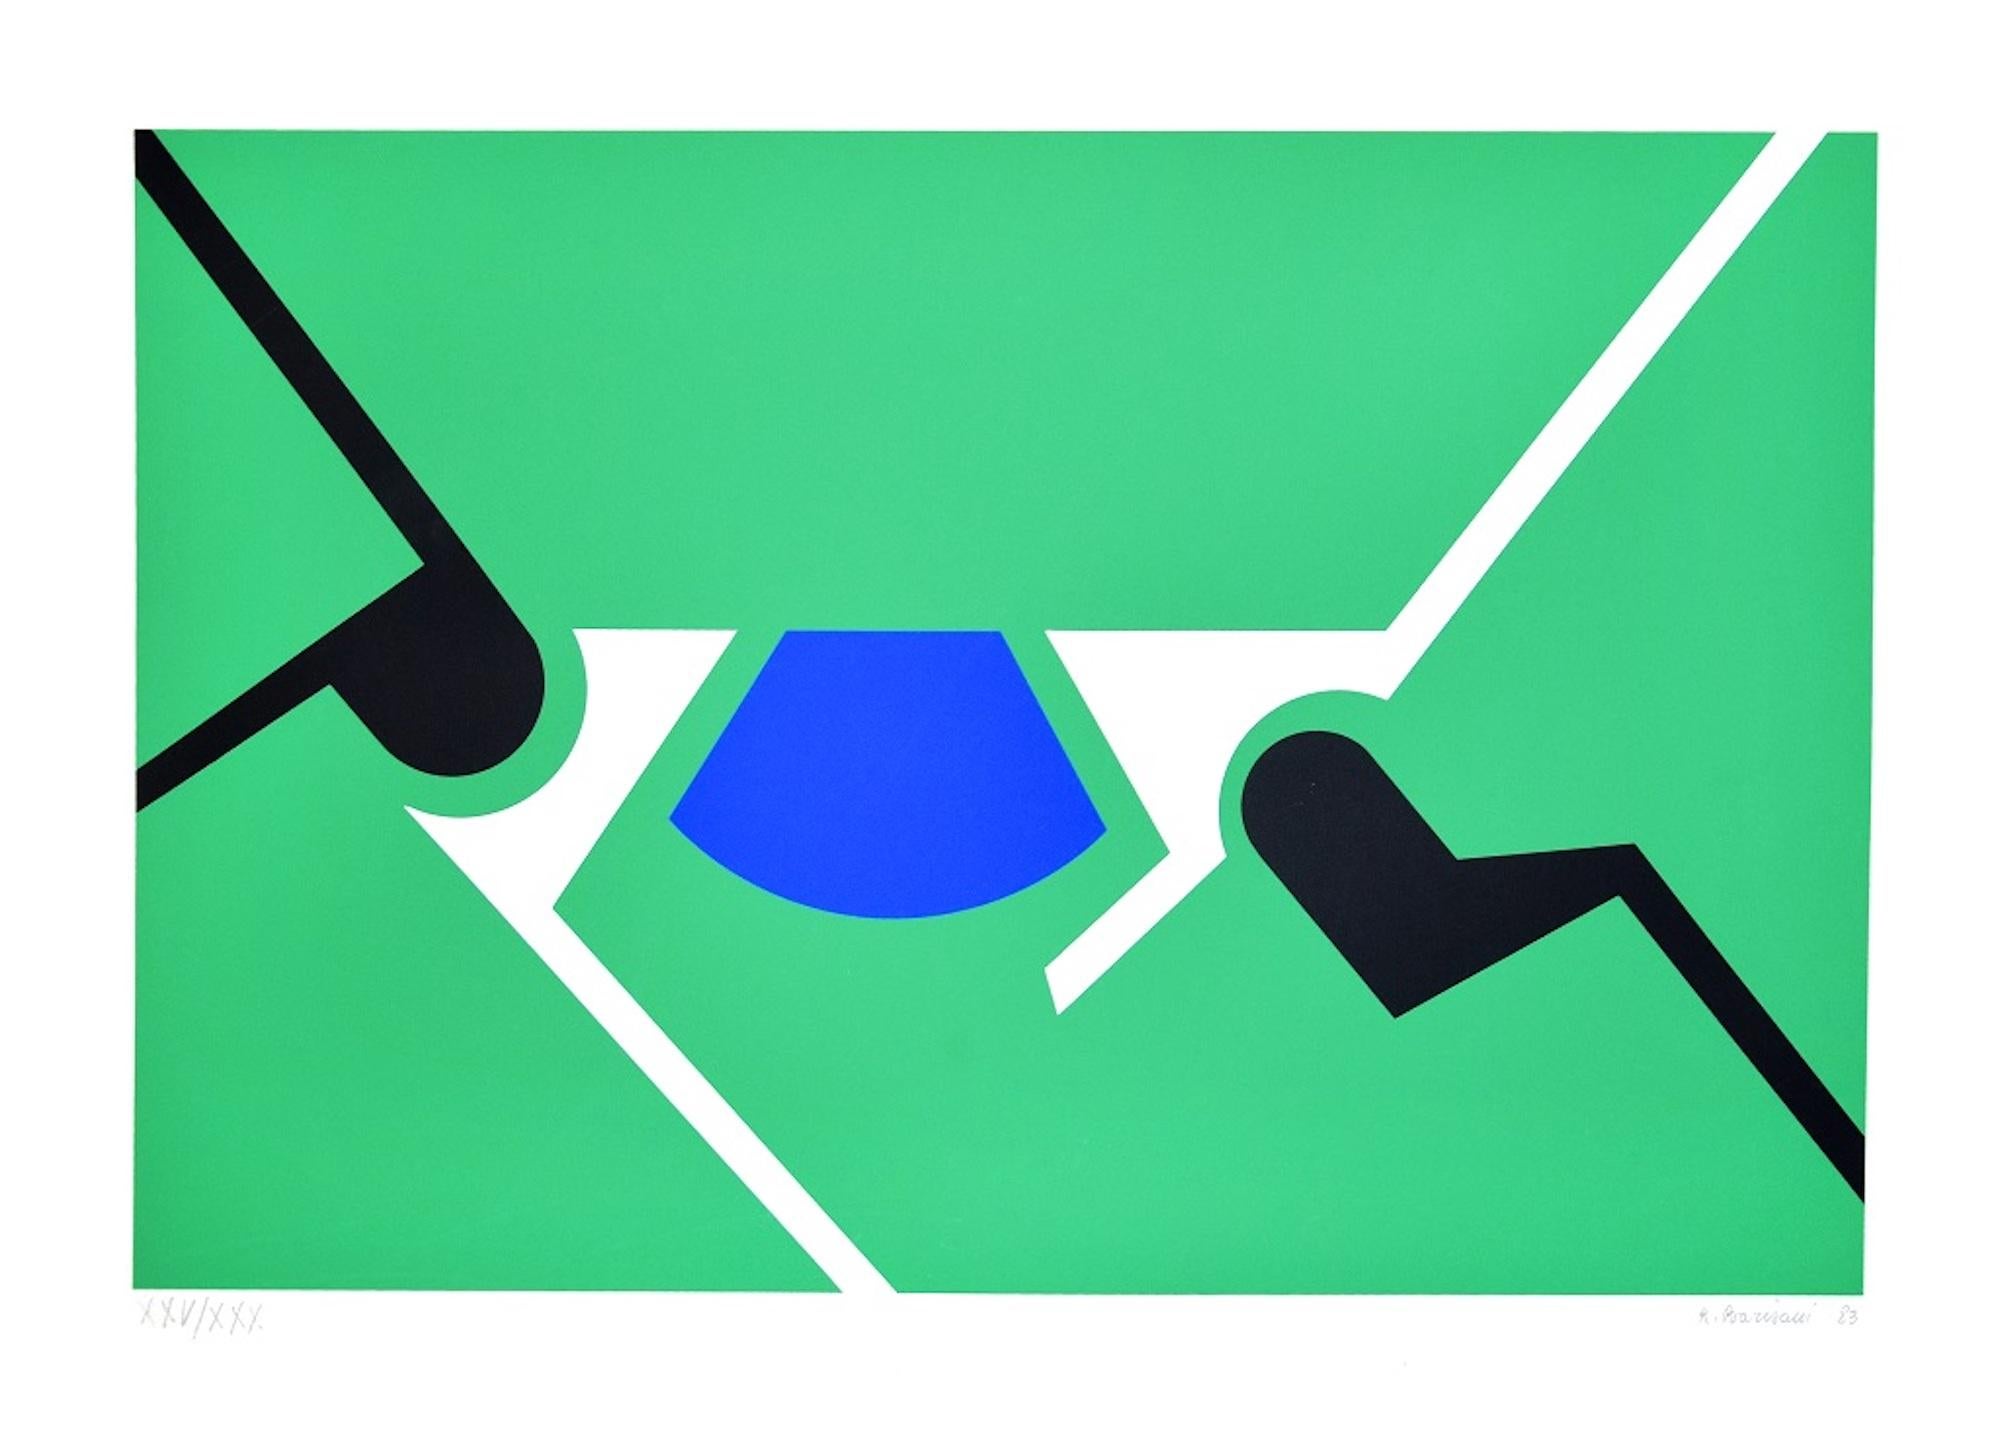 Green Shapes est une sérigraphie originale en couleur réalisée par Renato Barisani en 1983.

Signé à la main et daté au crayon en bas à droite. Numéroté au crayon en bas à gauche. Edition XXV/XXX.

Bonnes conditions.

Cette sérigraphie représente